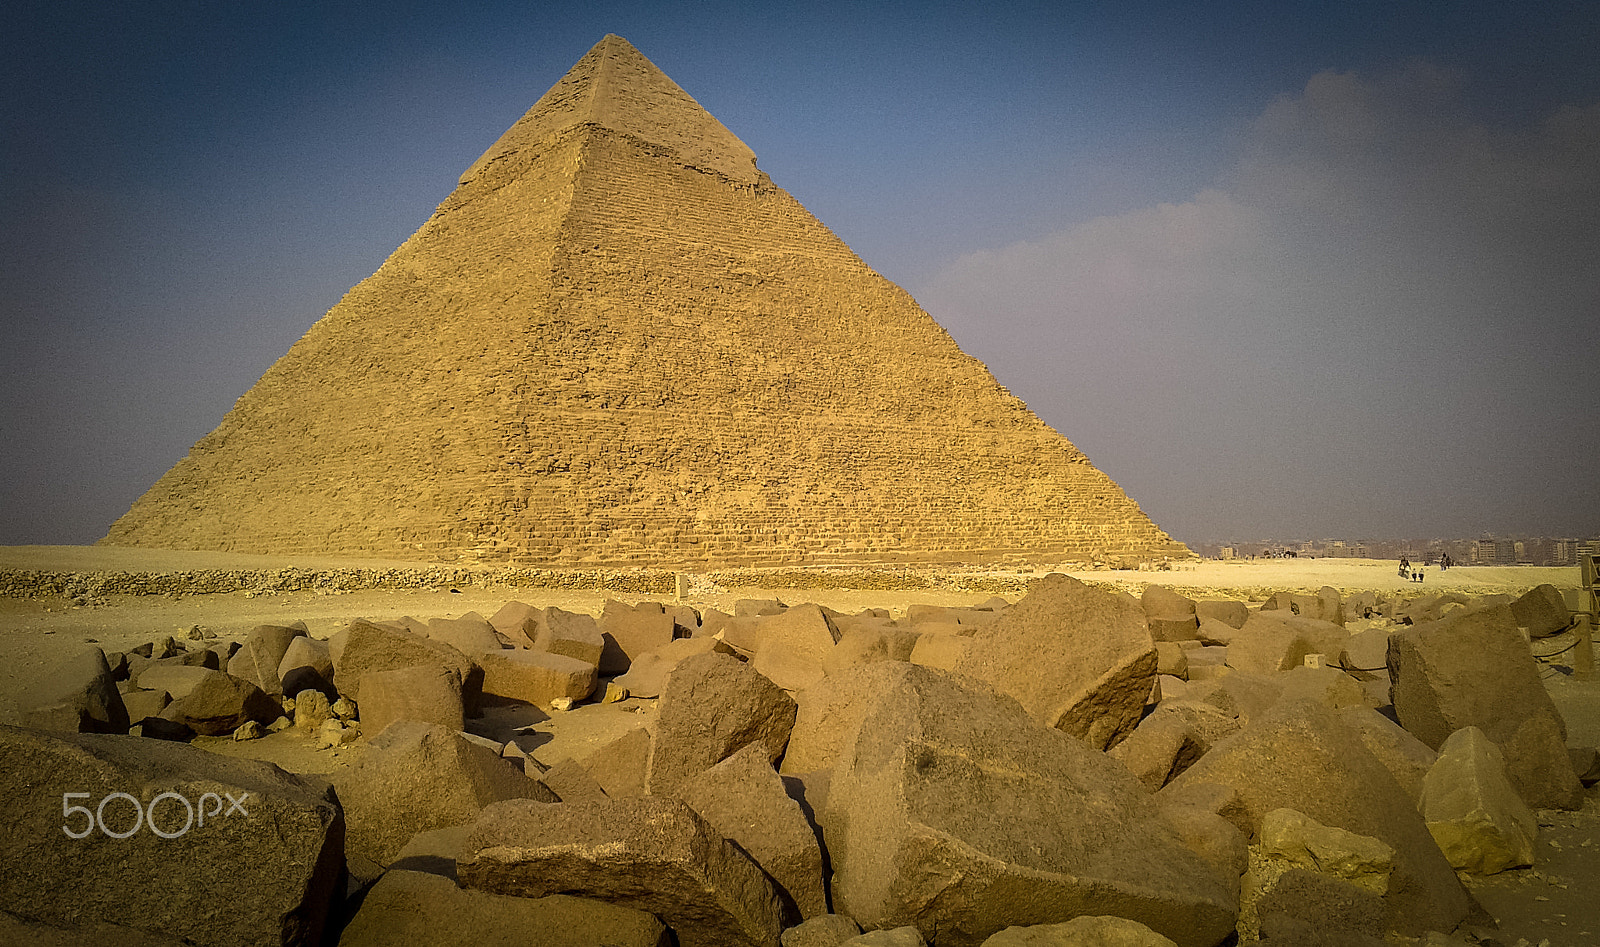 Samsung Galaxy J1 Ace sample photo. Saqqara & giza pyramids photography